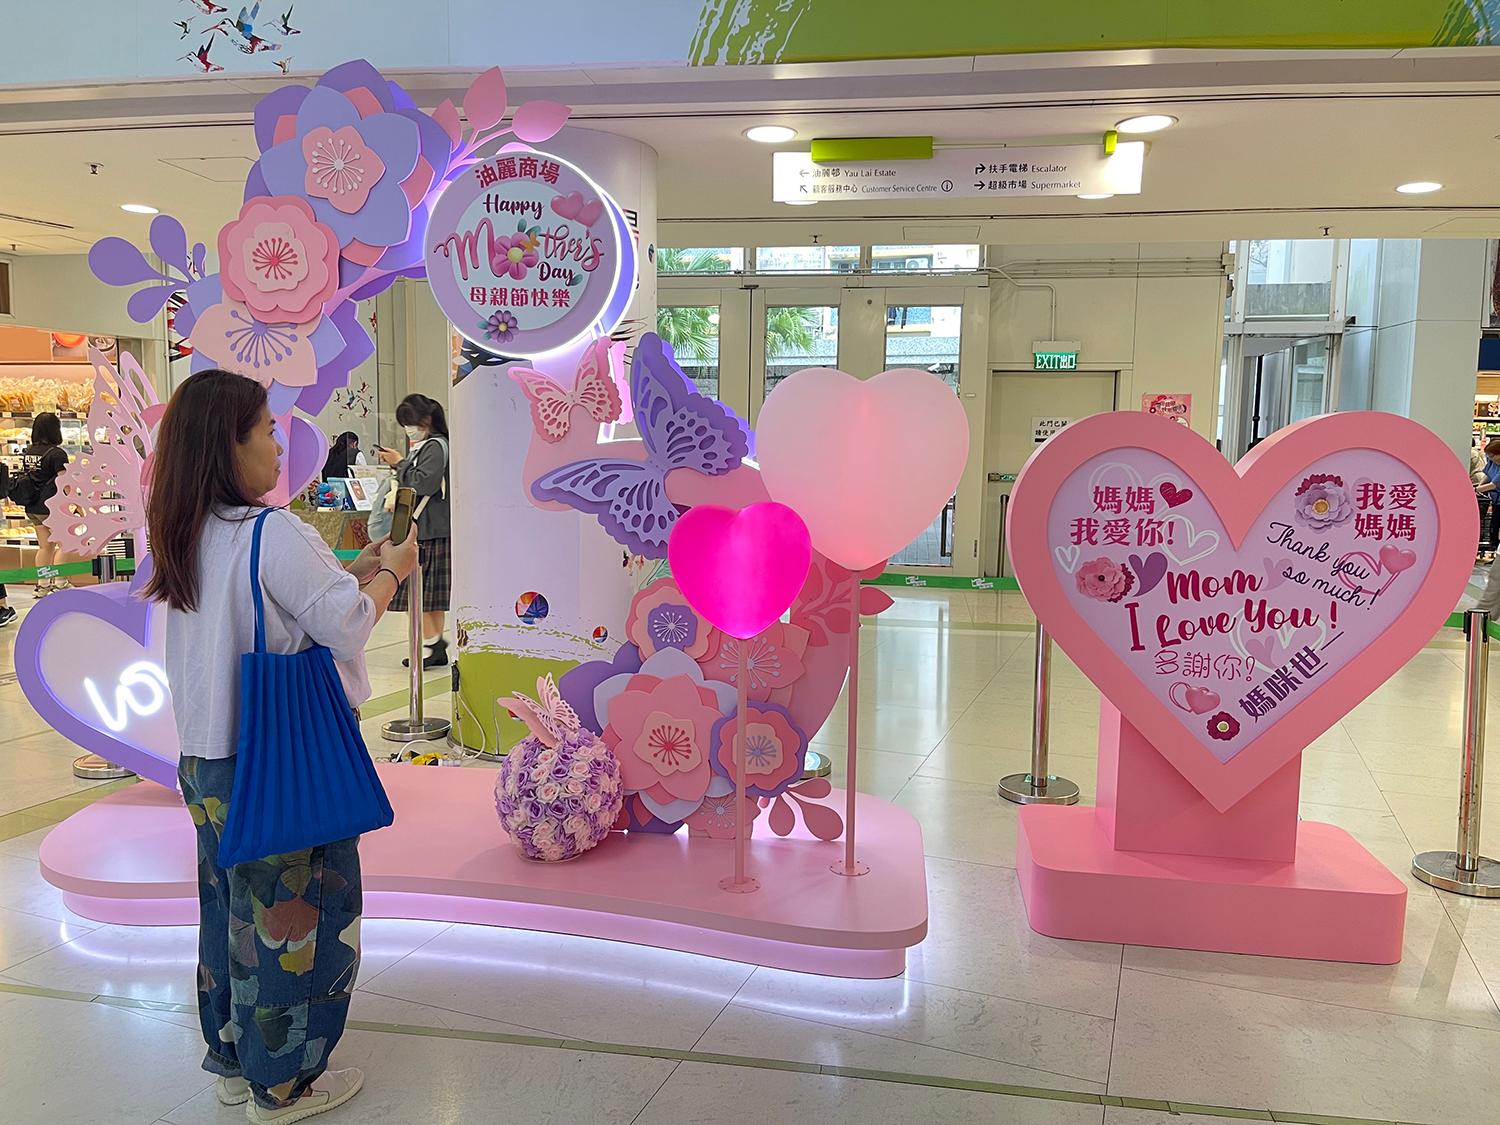 香港房屋委員會（房委會）於母親節期間在轄下多個商場舉辦推廣活動，以歌頌母愛和增加商場人流。圖示房委會油塘油麗商場的母親節擺設。